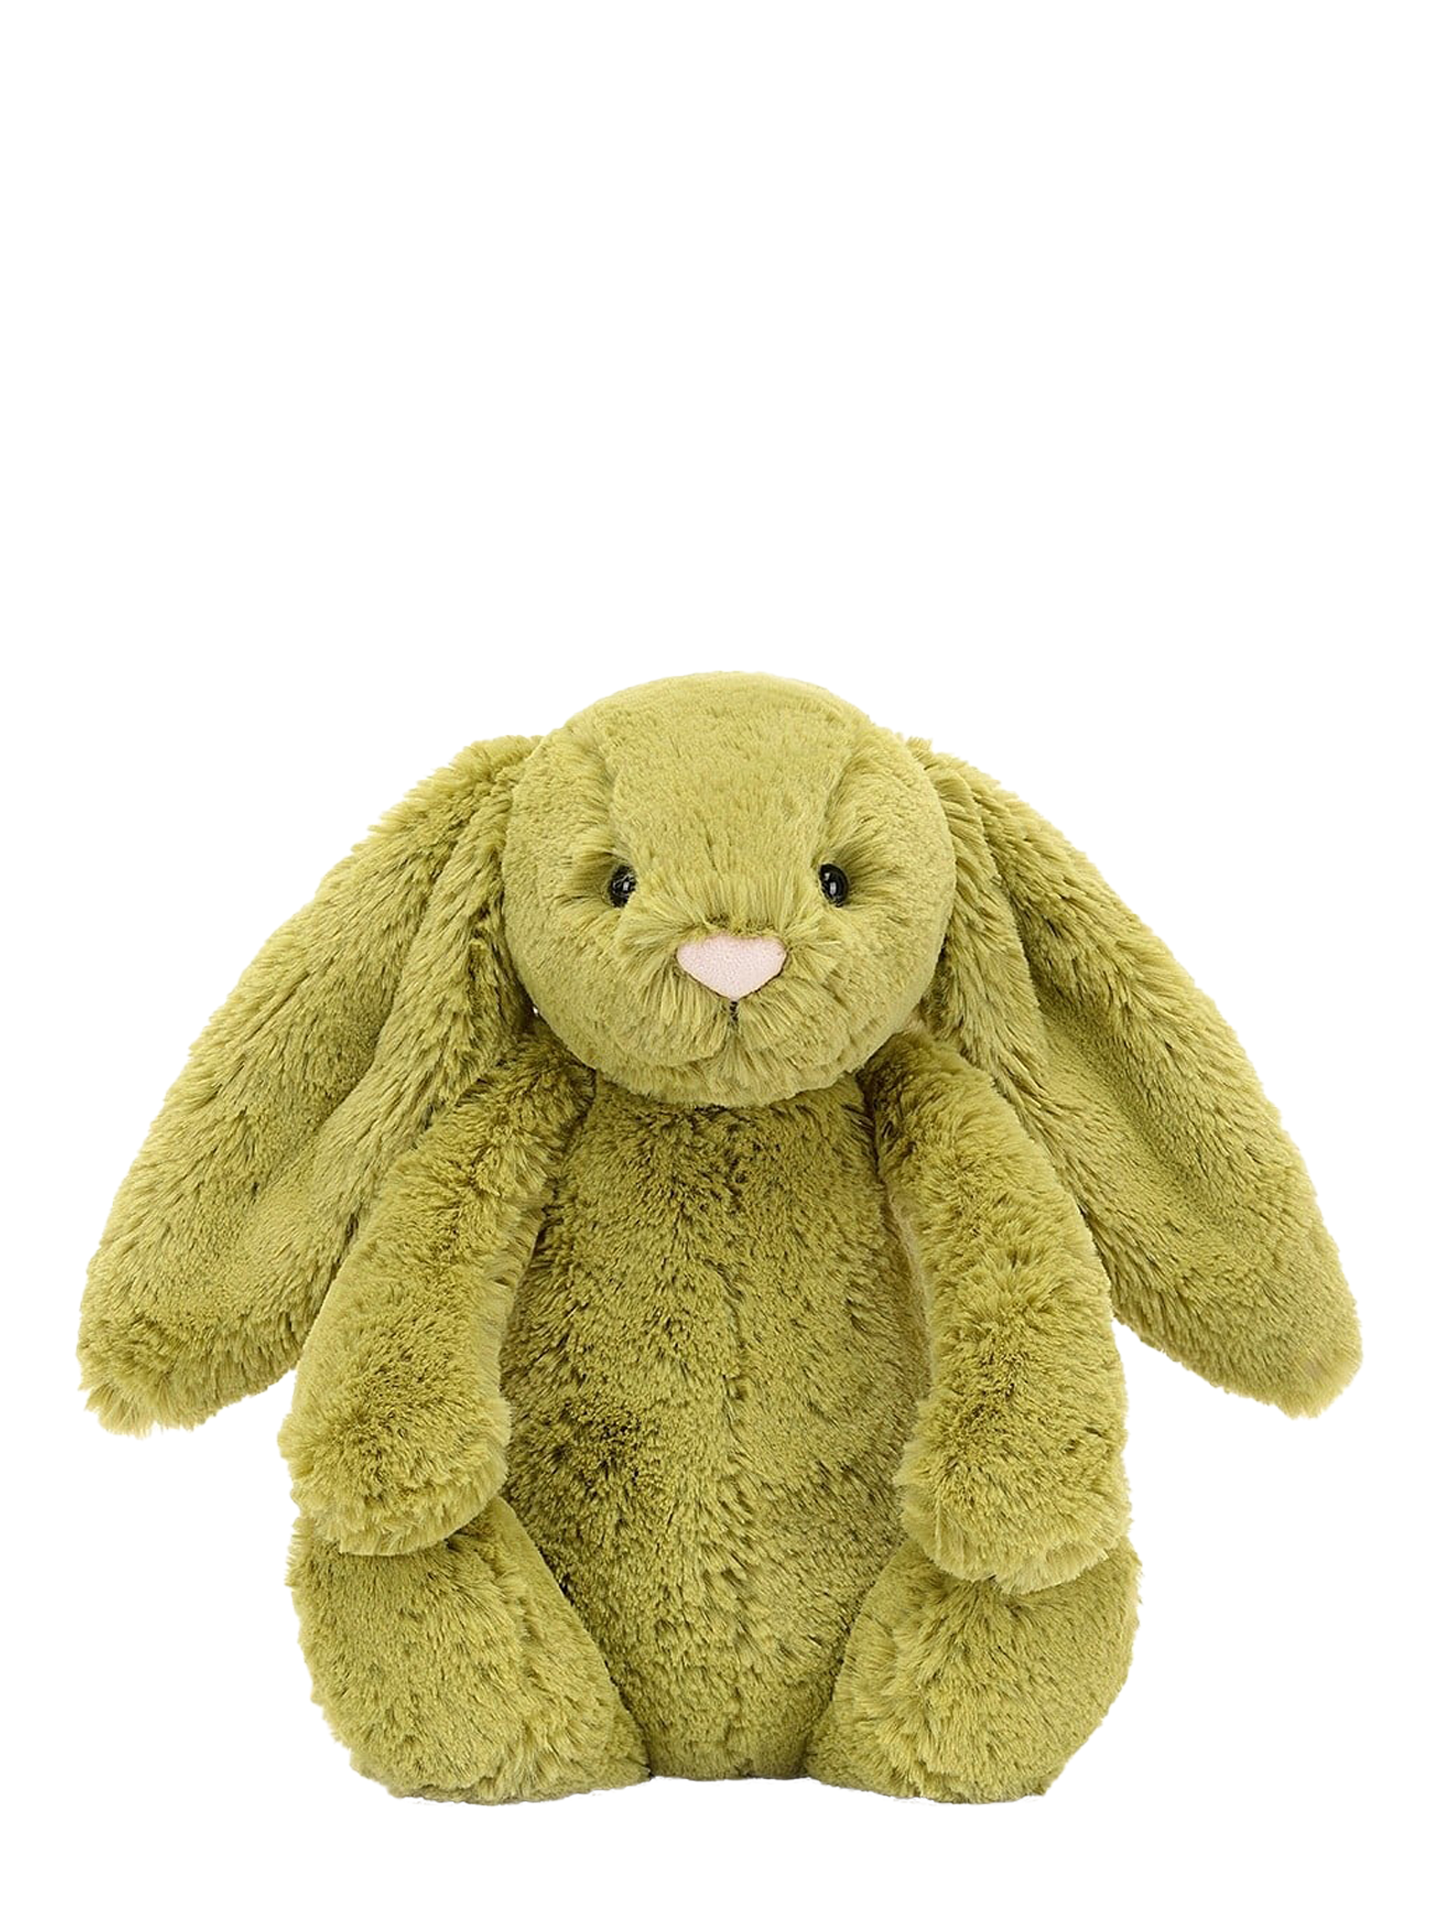 Bashful Moss Bunny, medium